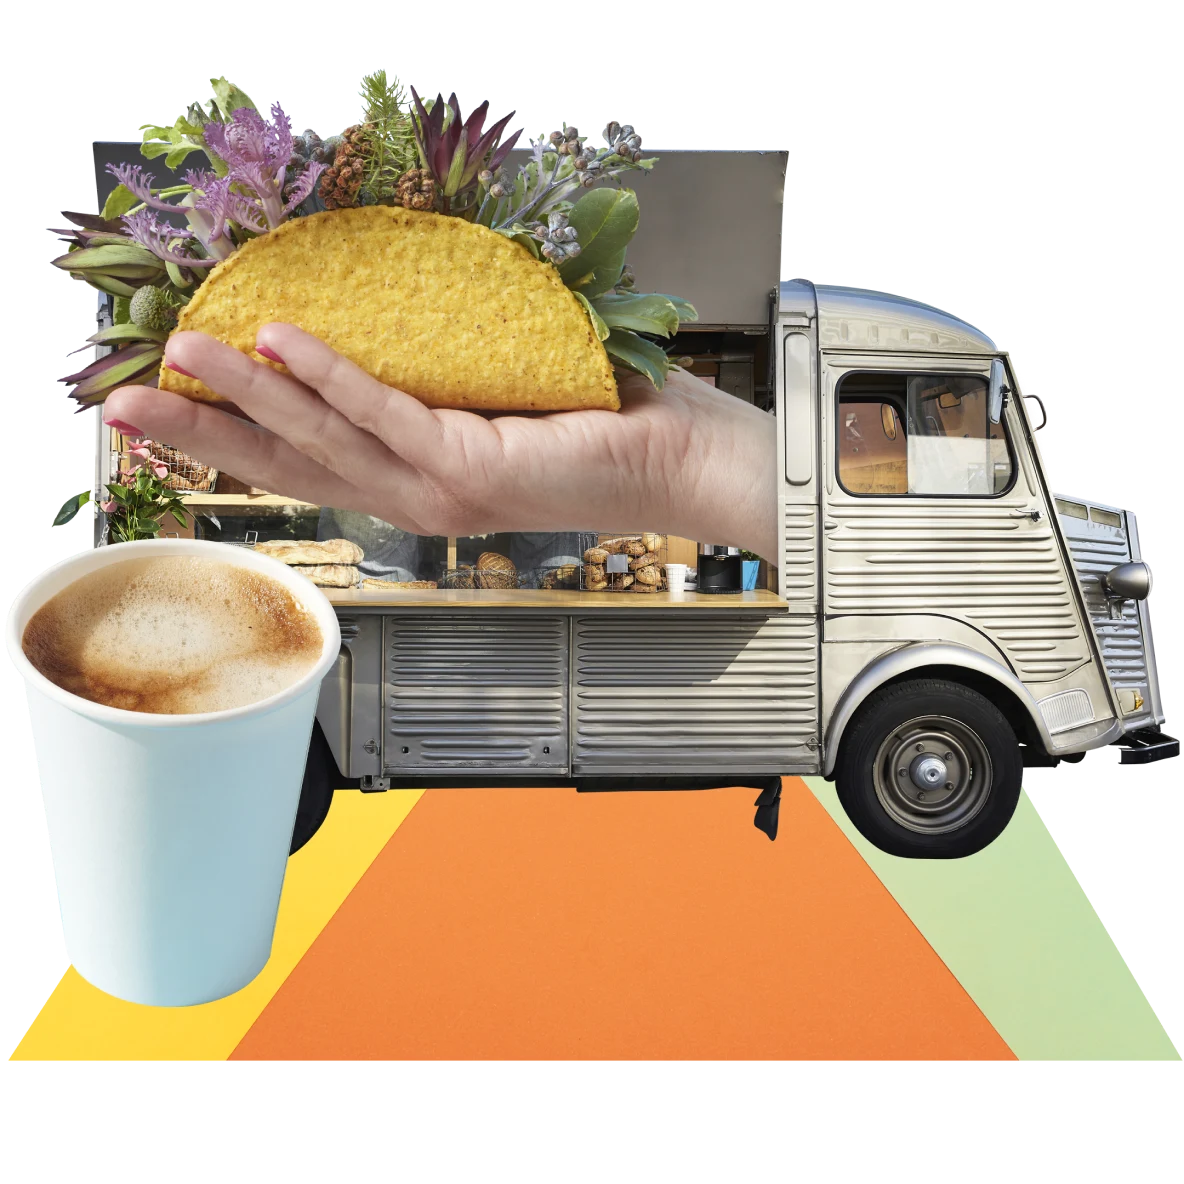 Eine Collage mit Geschäftsideen. Eine Hand, die eine Taco-Schale hält, aus der Blumen wachsen. Ein silberner Essenswagen im Hintergrund, der geöffnet hat. Links ein hellblauer Pappbecher mit schaumigem Kaffee.